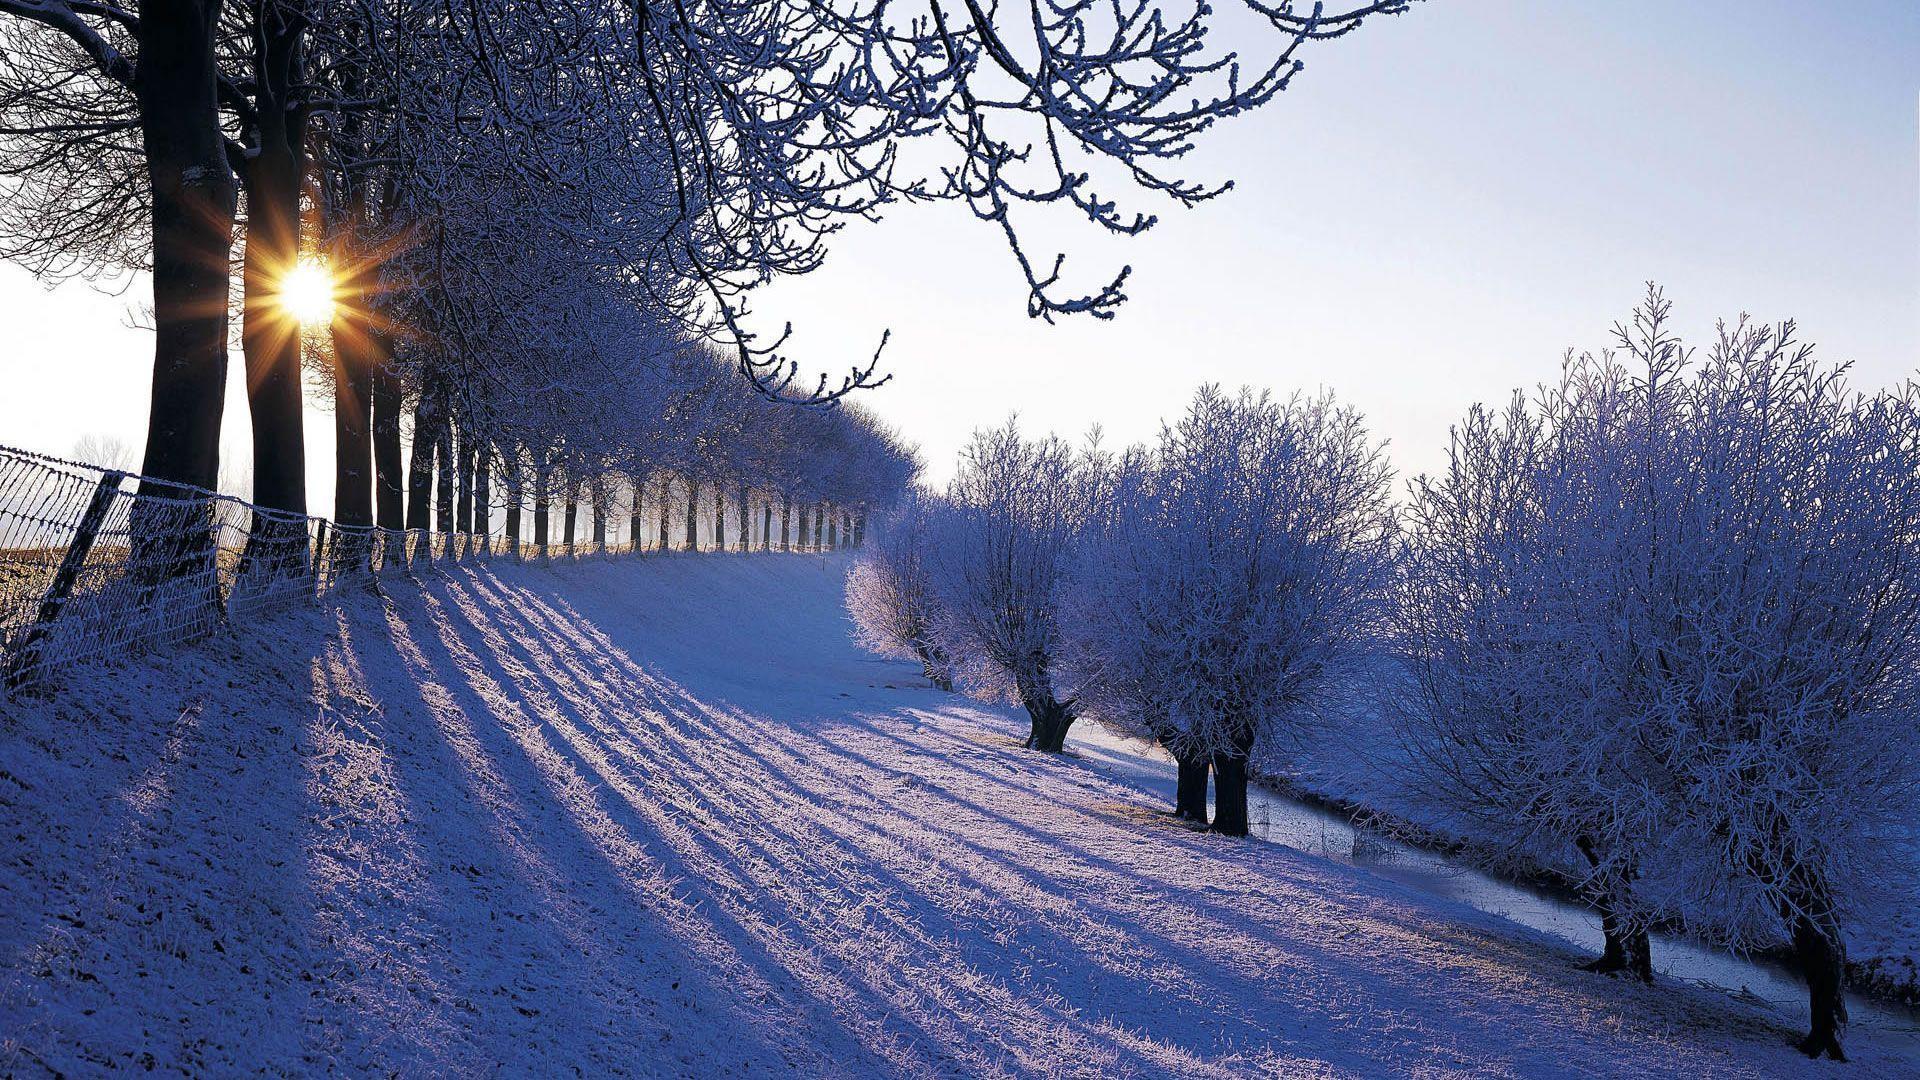 Wallpaper For > Winter Landscape Background